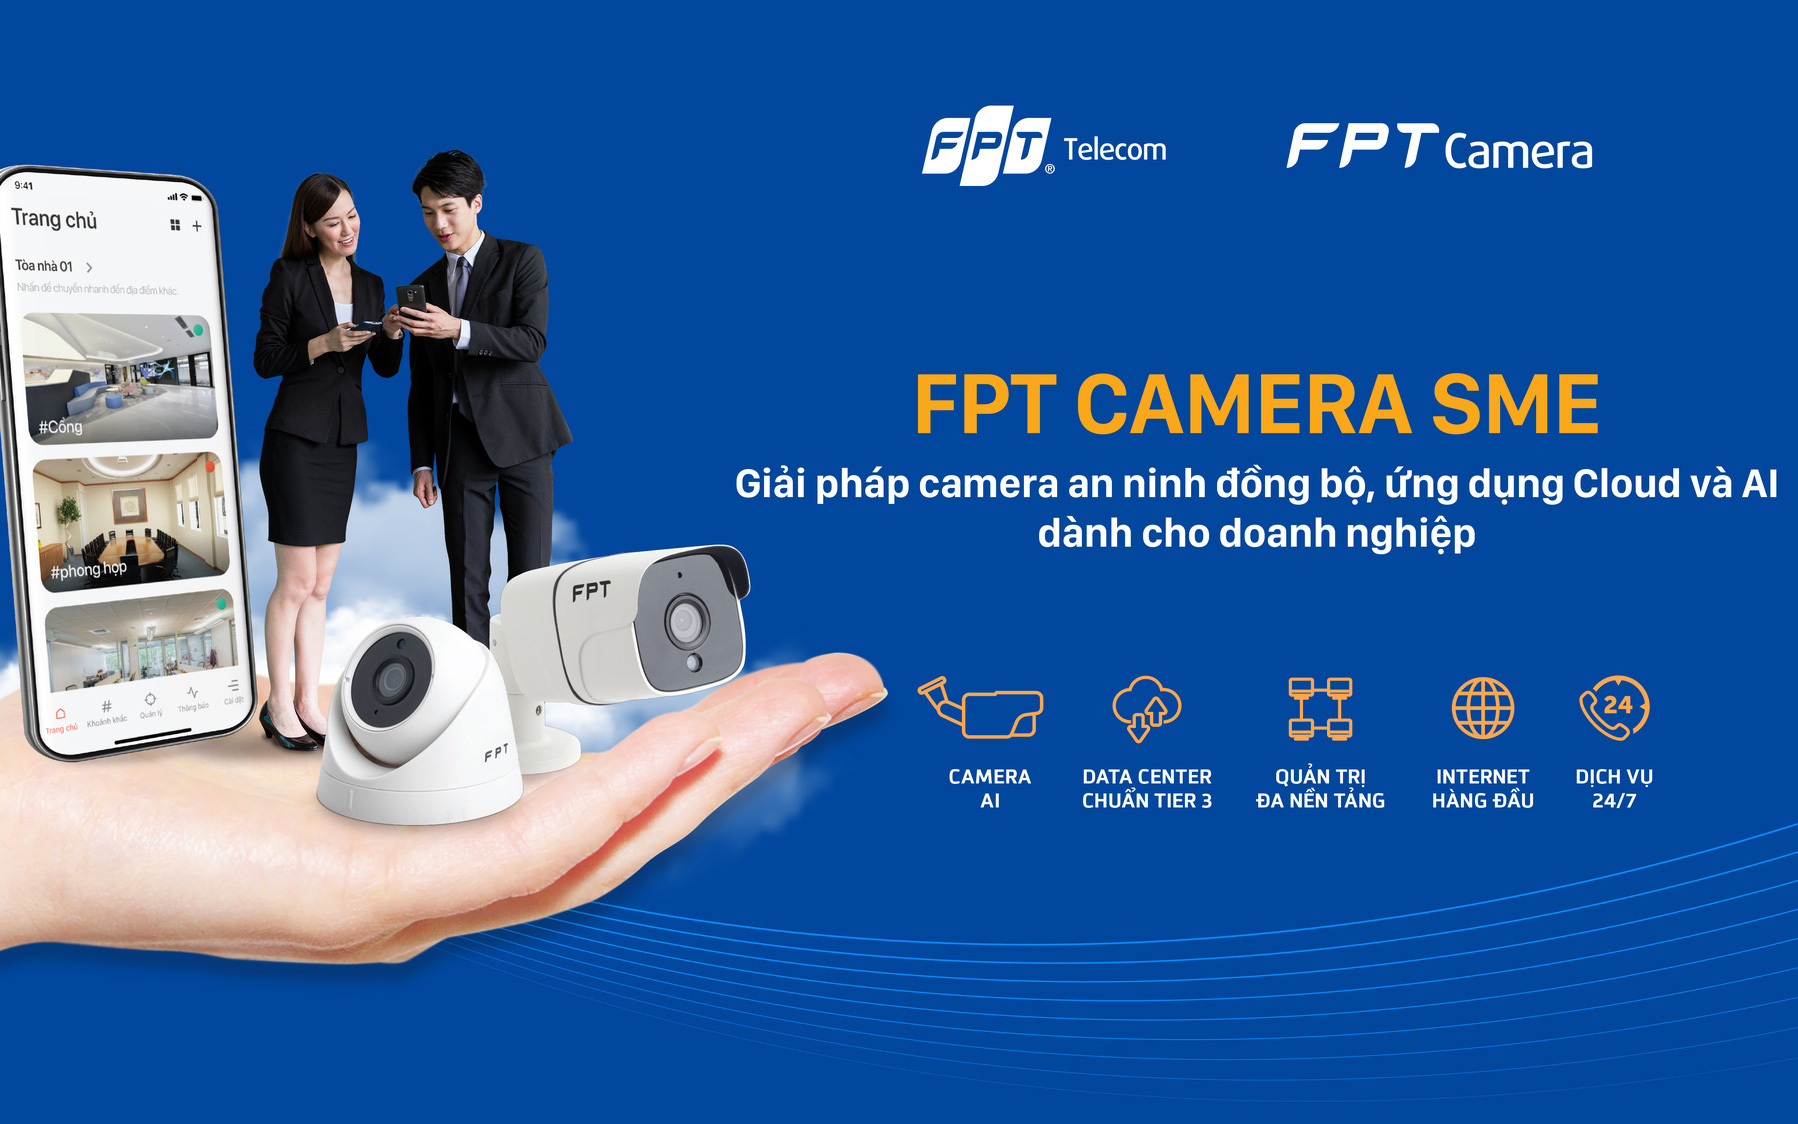 Giải nỗi lo thiếu an toàn và bảo mật dữ liệu từ camera an ninh trong doanh nghiệp nhờ FPT Camera SME